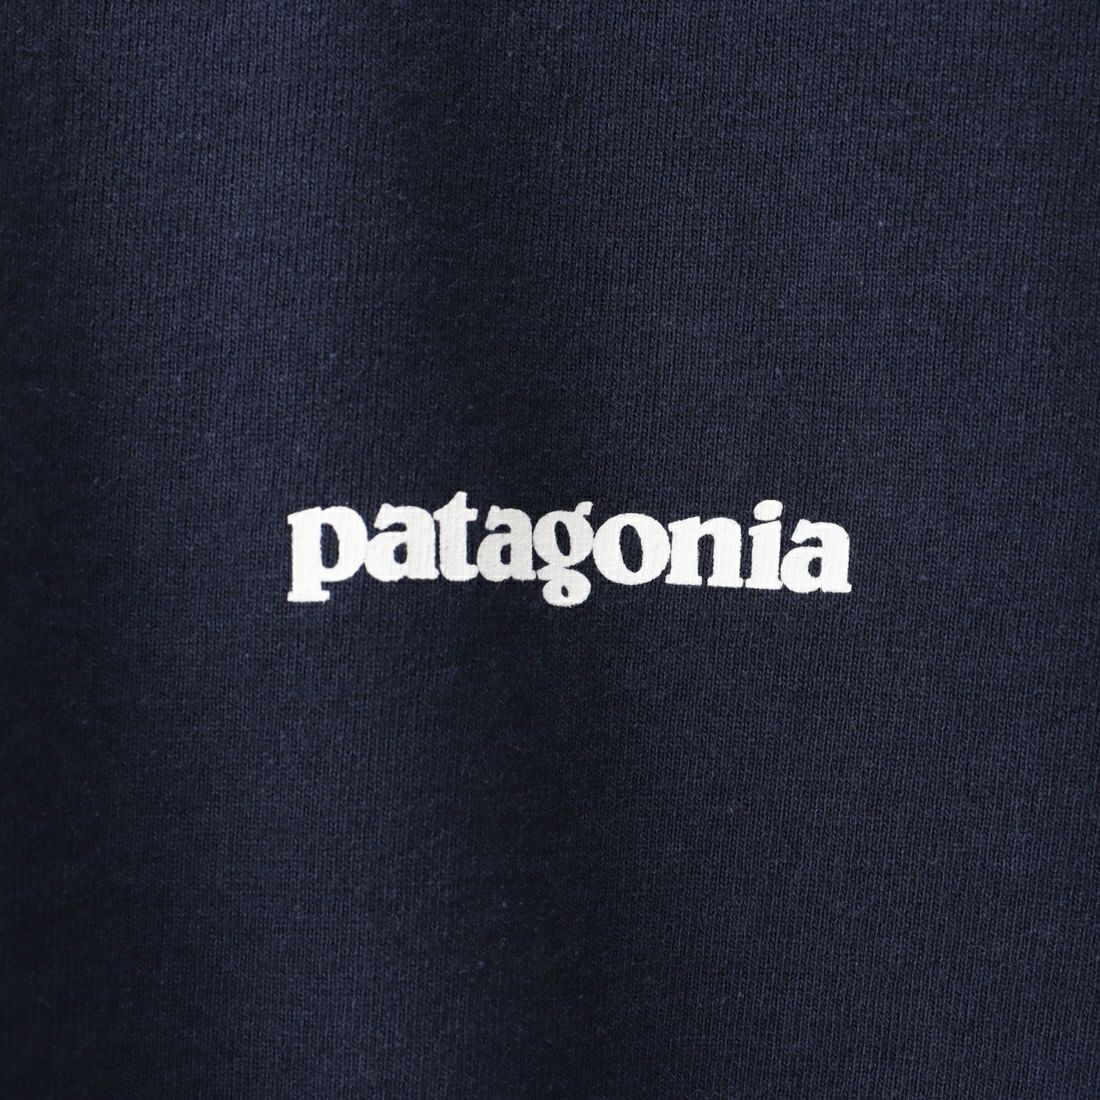 patagonia [パタゴニア] メンズ P-6ロゴ レスポンシビリティー [38504] CNY